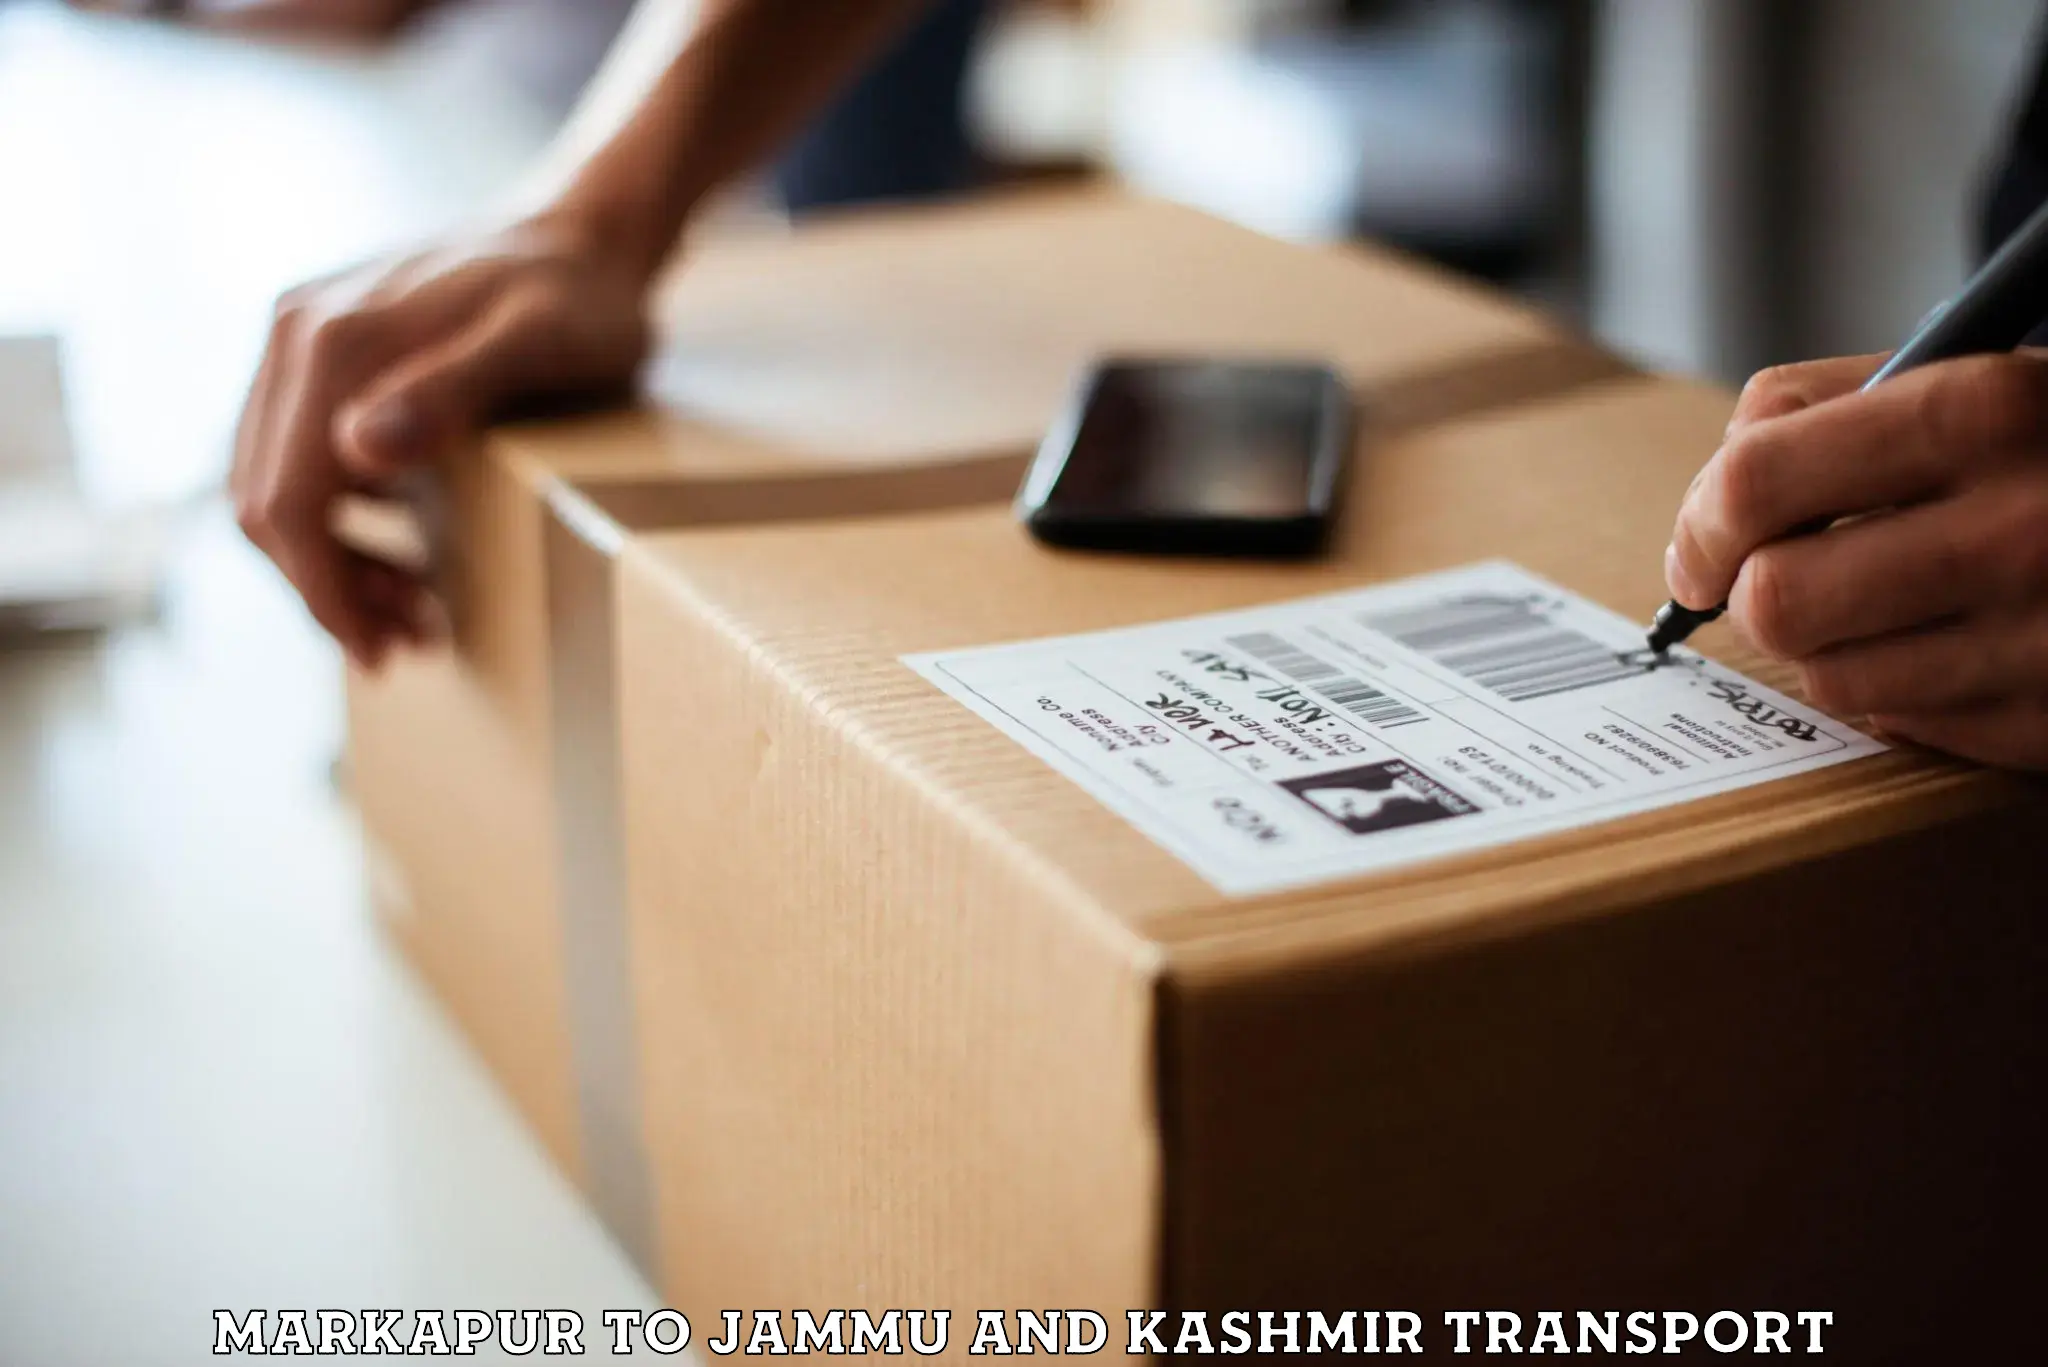 Parcel transport services Markapur to Jammu and Kashmir